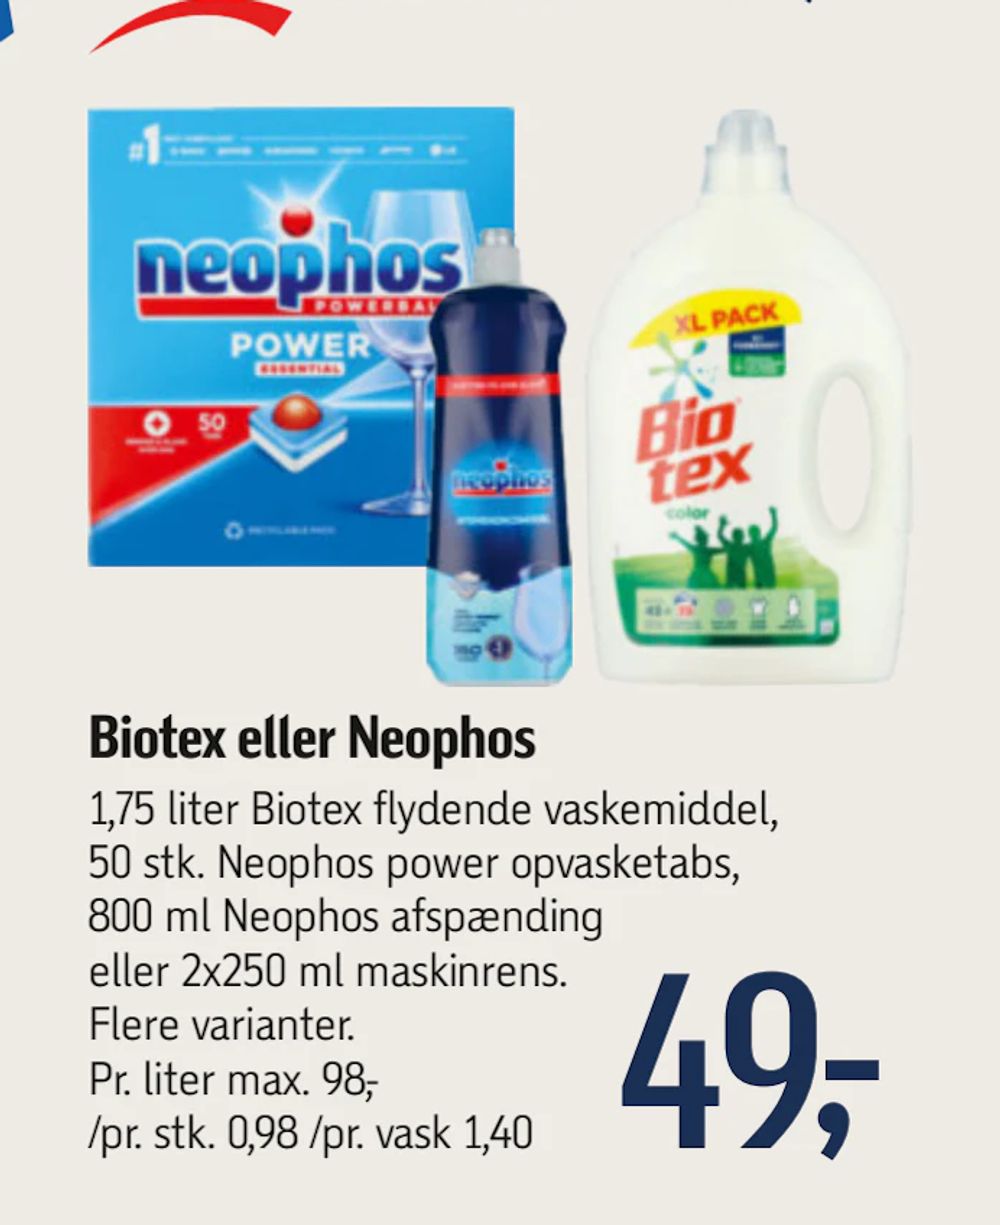 Tilbud på Biotex eller Neophos fra føtex til 49 kr.